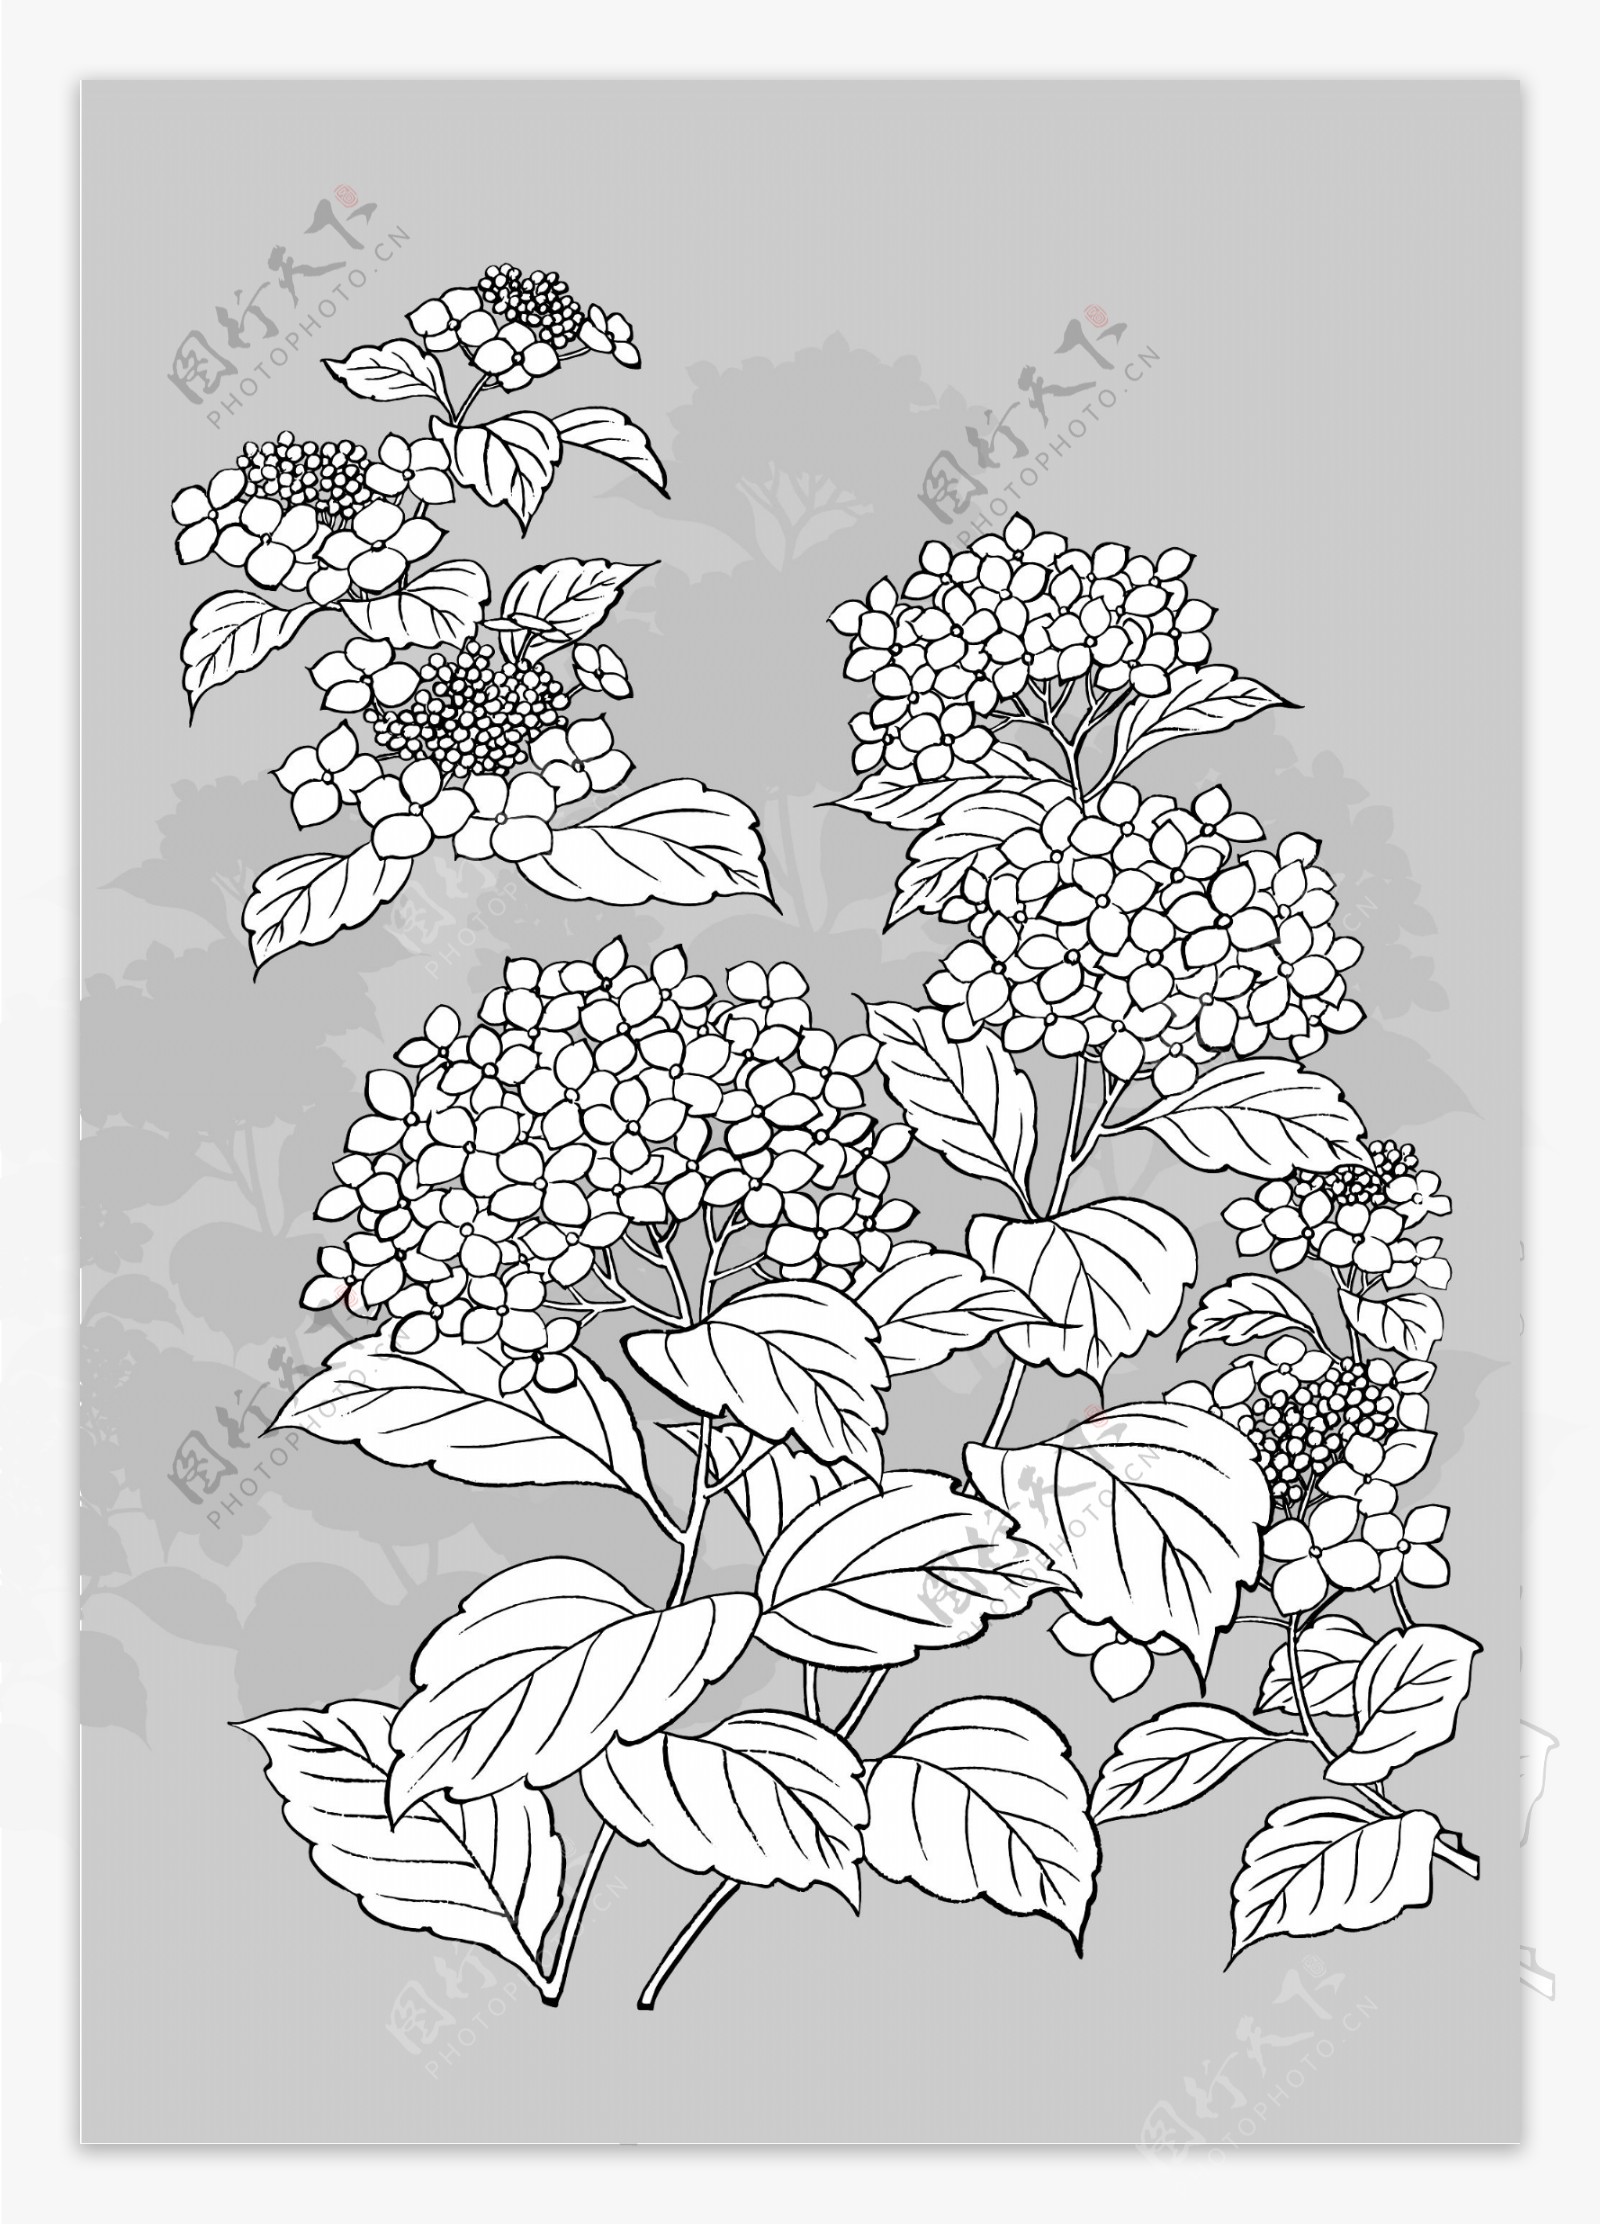 日本线描植物花卉矢量素材1紫阳花与蜗牛